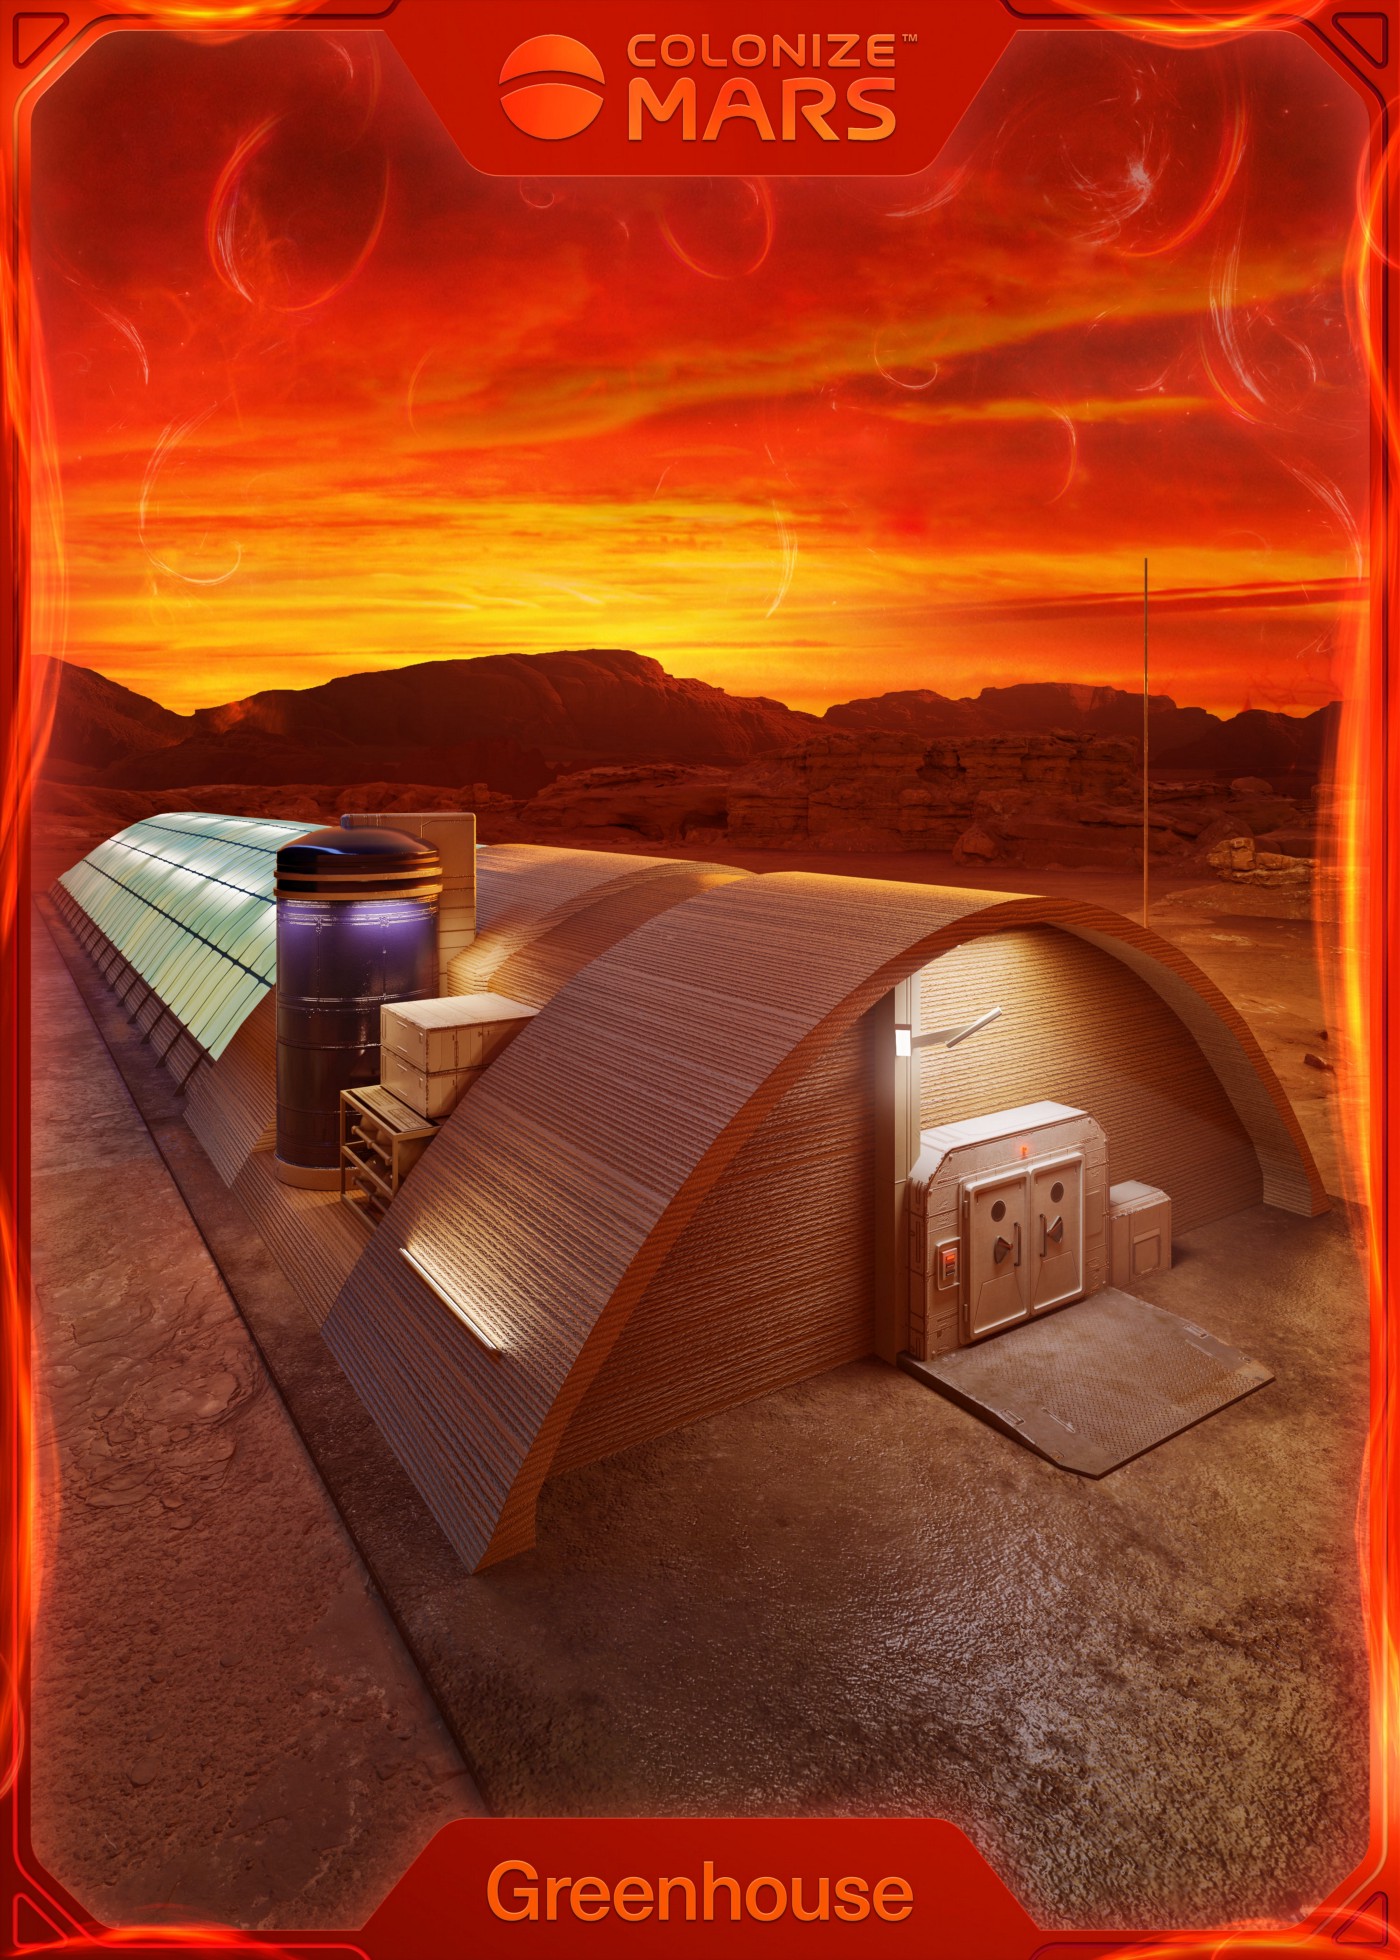 Colonize Mars Solar Flare Greenhouse